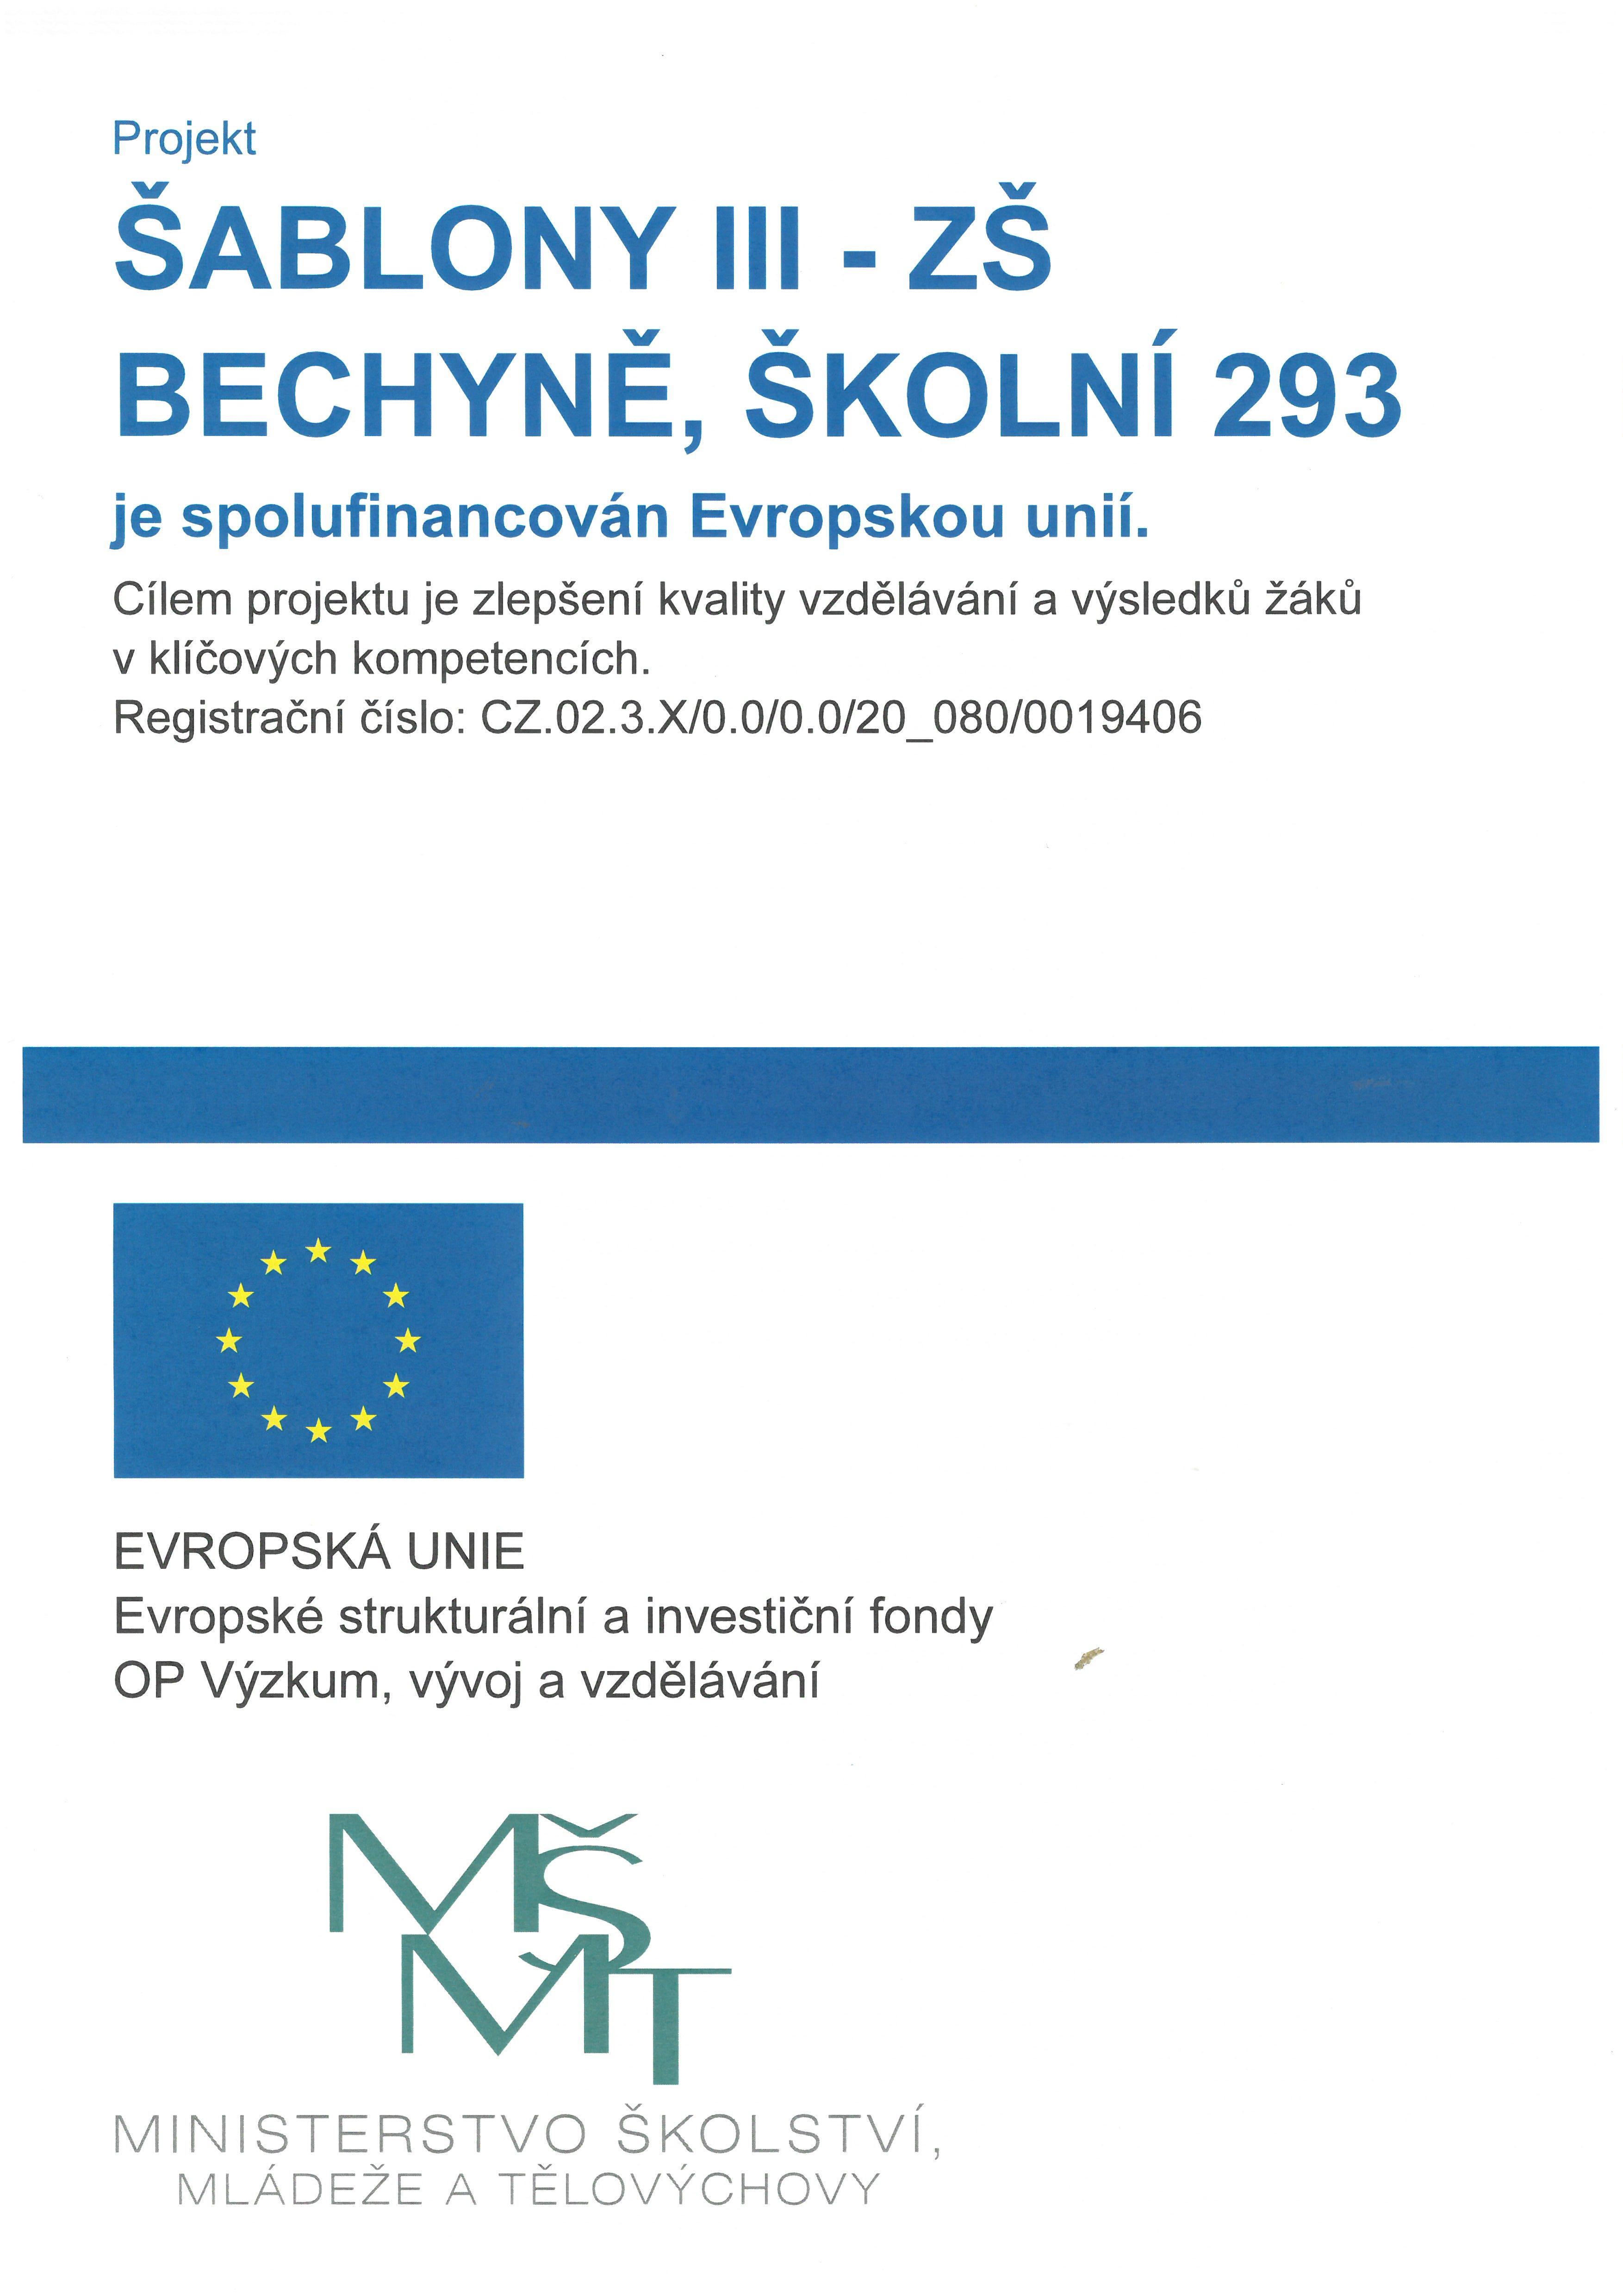 Projekt šablony III Projekt  ŠABLONY III - ZŠ BECHYNĚ, ŠKOLNÍ 293 je spolufinancován Evropskou unií.  Cílem projektu je zlepšení kvality vzdělávání a výsledků žáků v klíčových kompetencích.